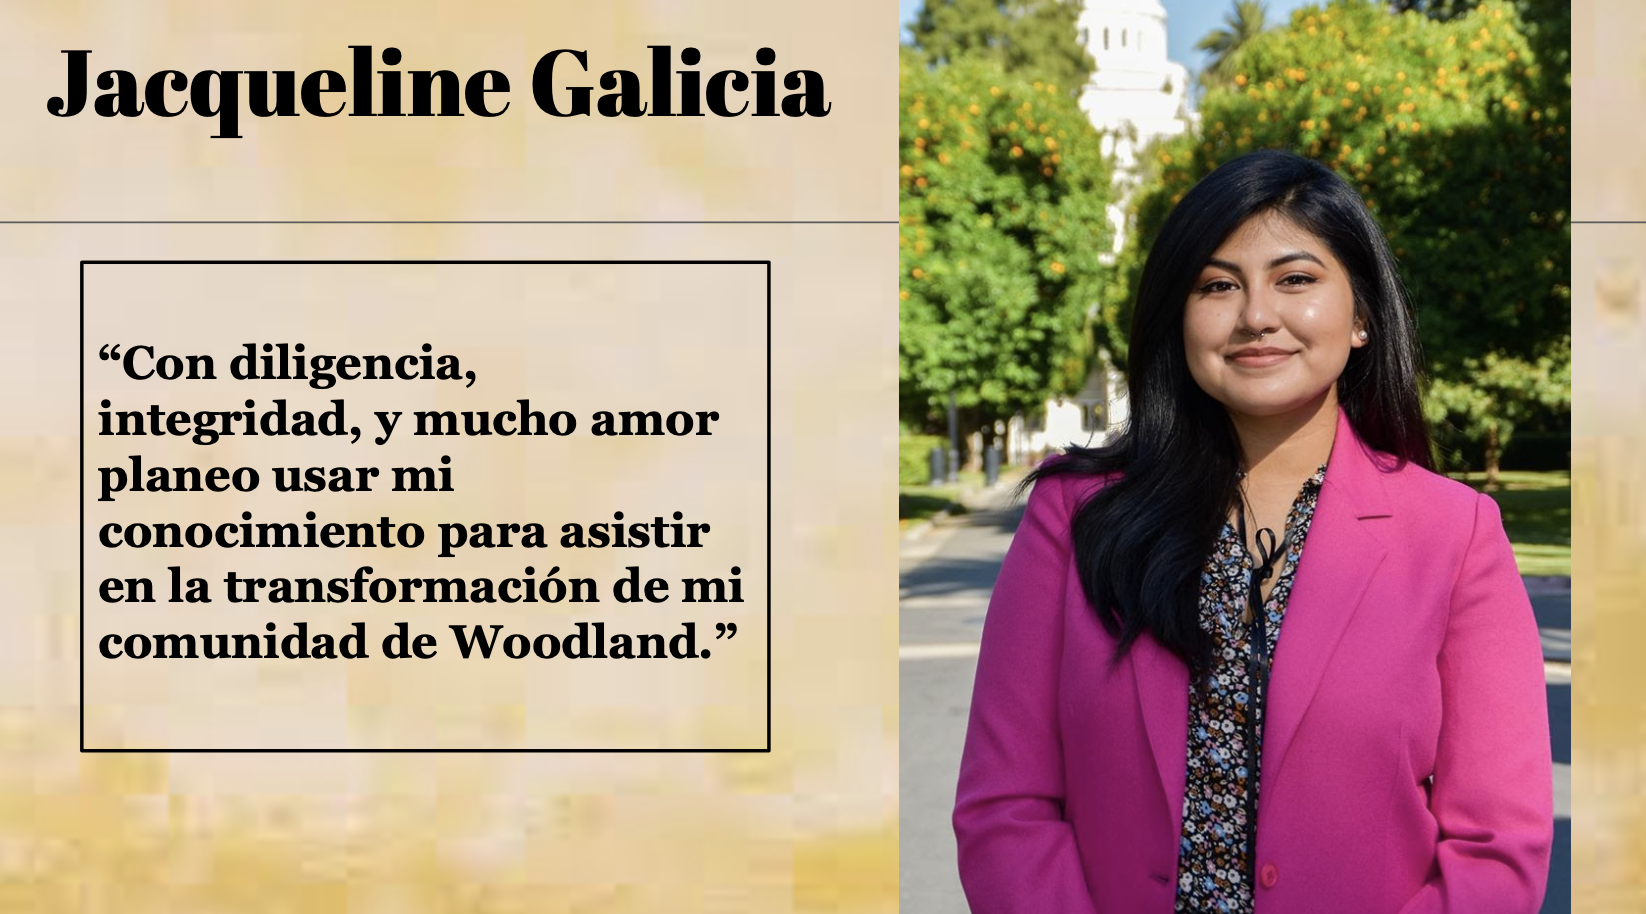 Jacqueline Galicia said "Con diligencia, integridad, y mucho amor planeo usar mi conocimiento para asistir en la transformación de mi comunidad de Woodland."